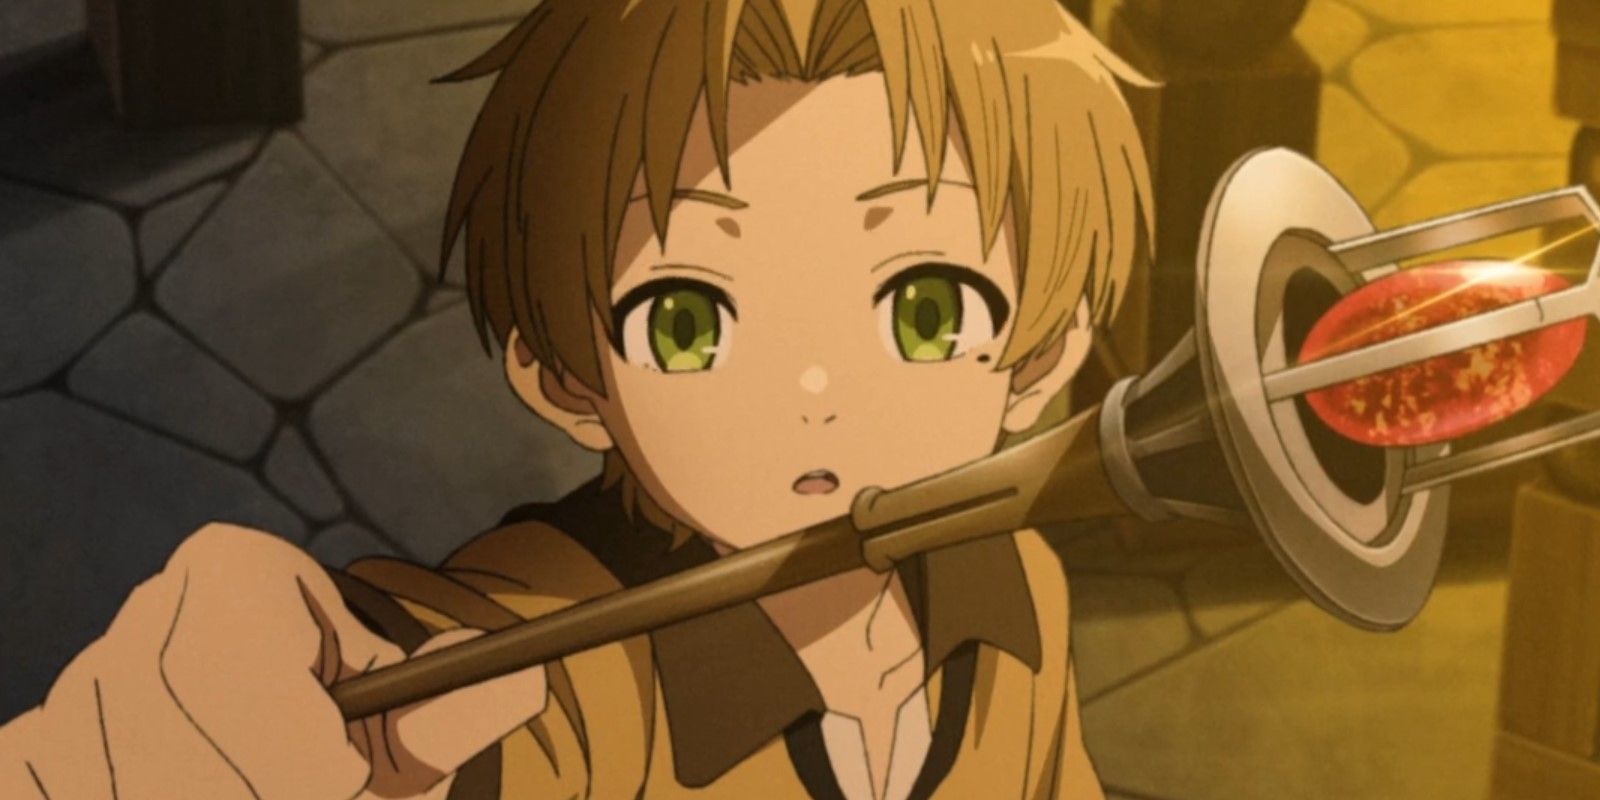 Mushoku Tensei Rudeus Greyrat holding up his new wand